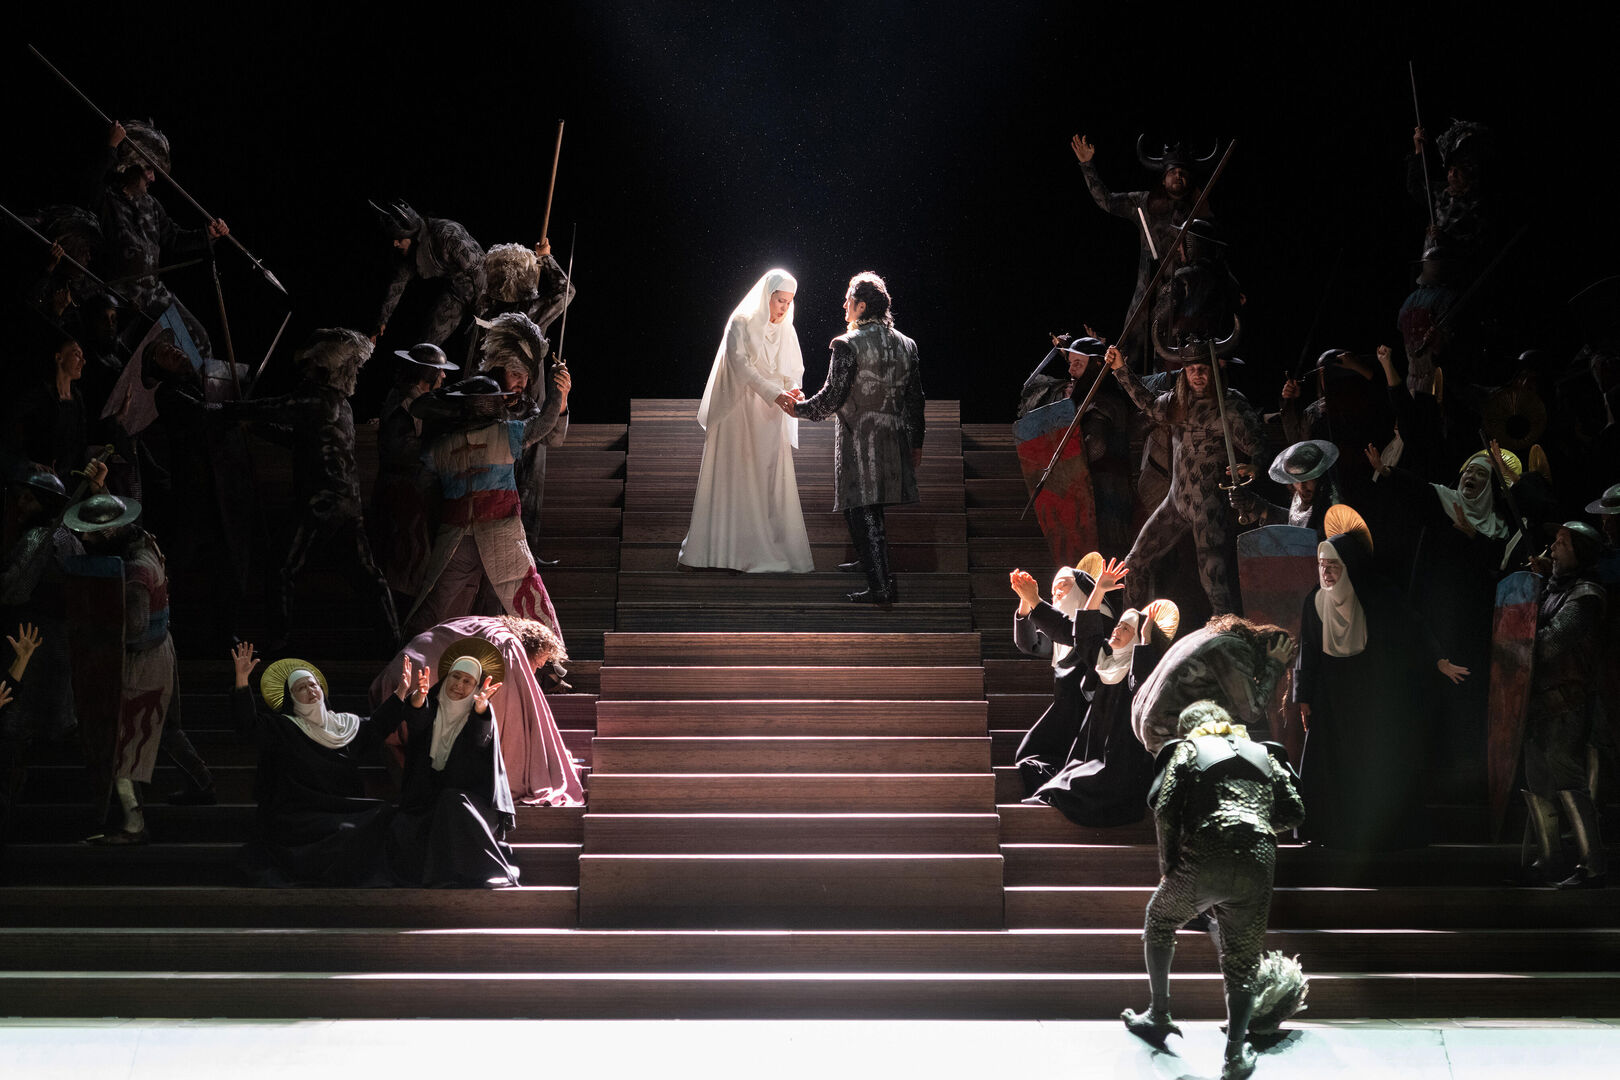 The Royal Opera: Il Trovatore